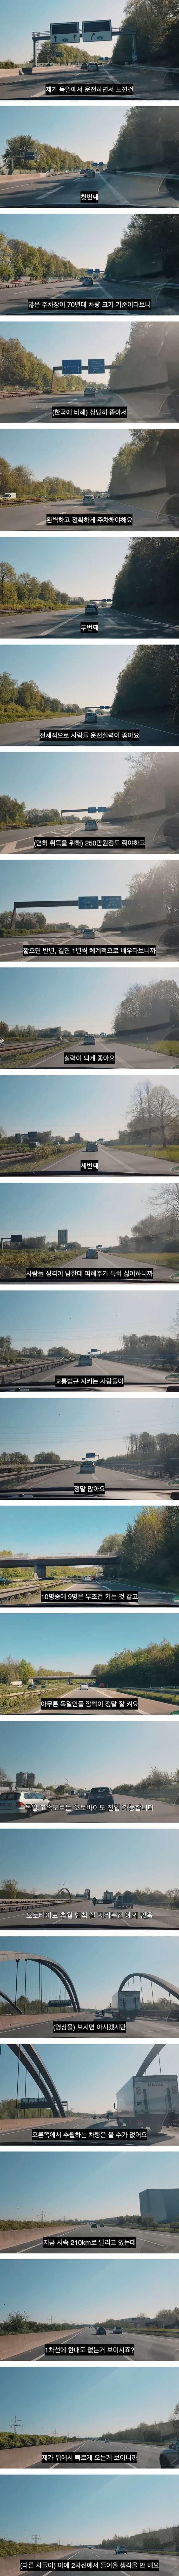 한국인의 독일 고속도로 운전 후기